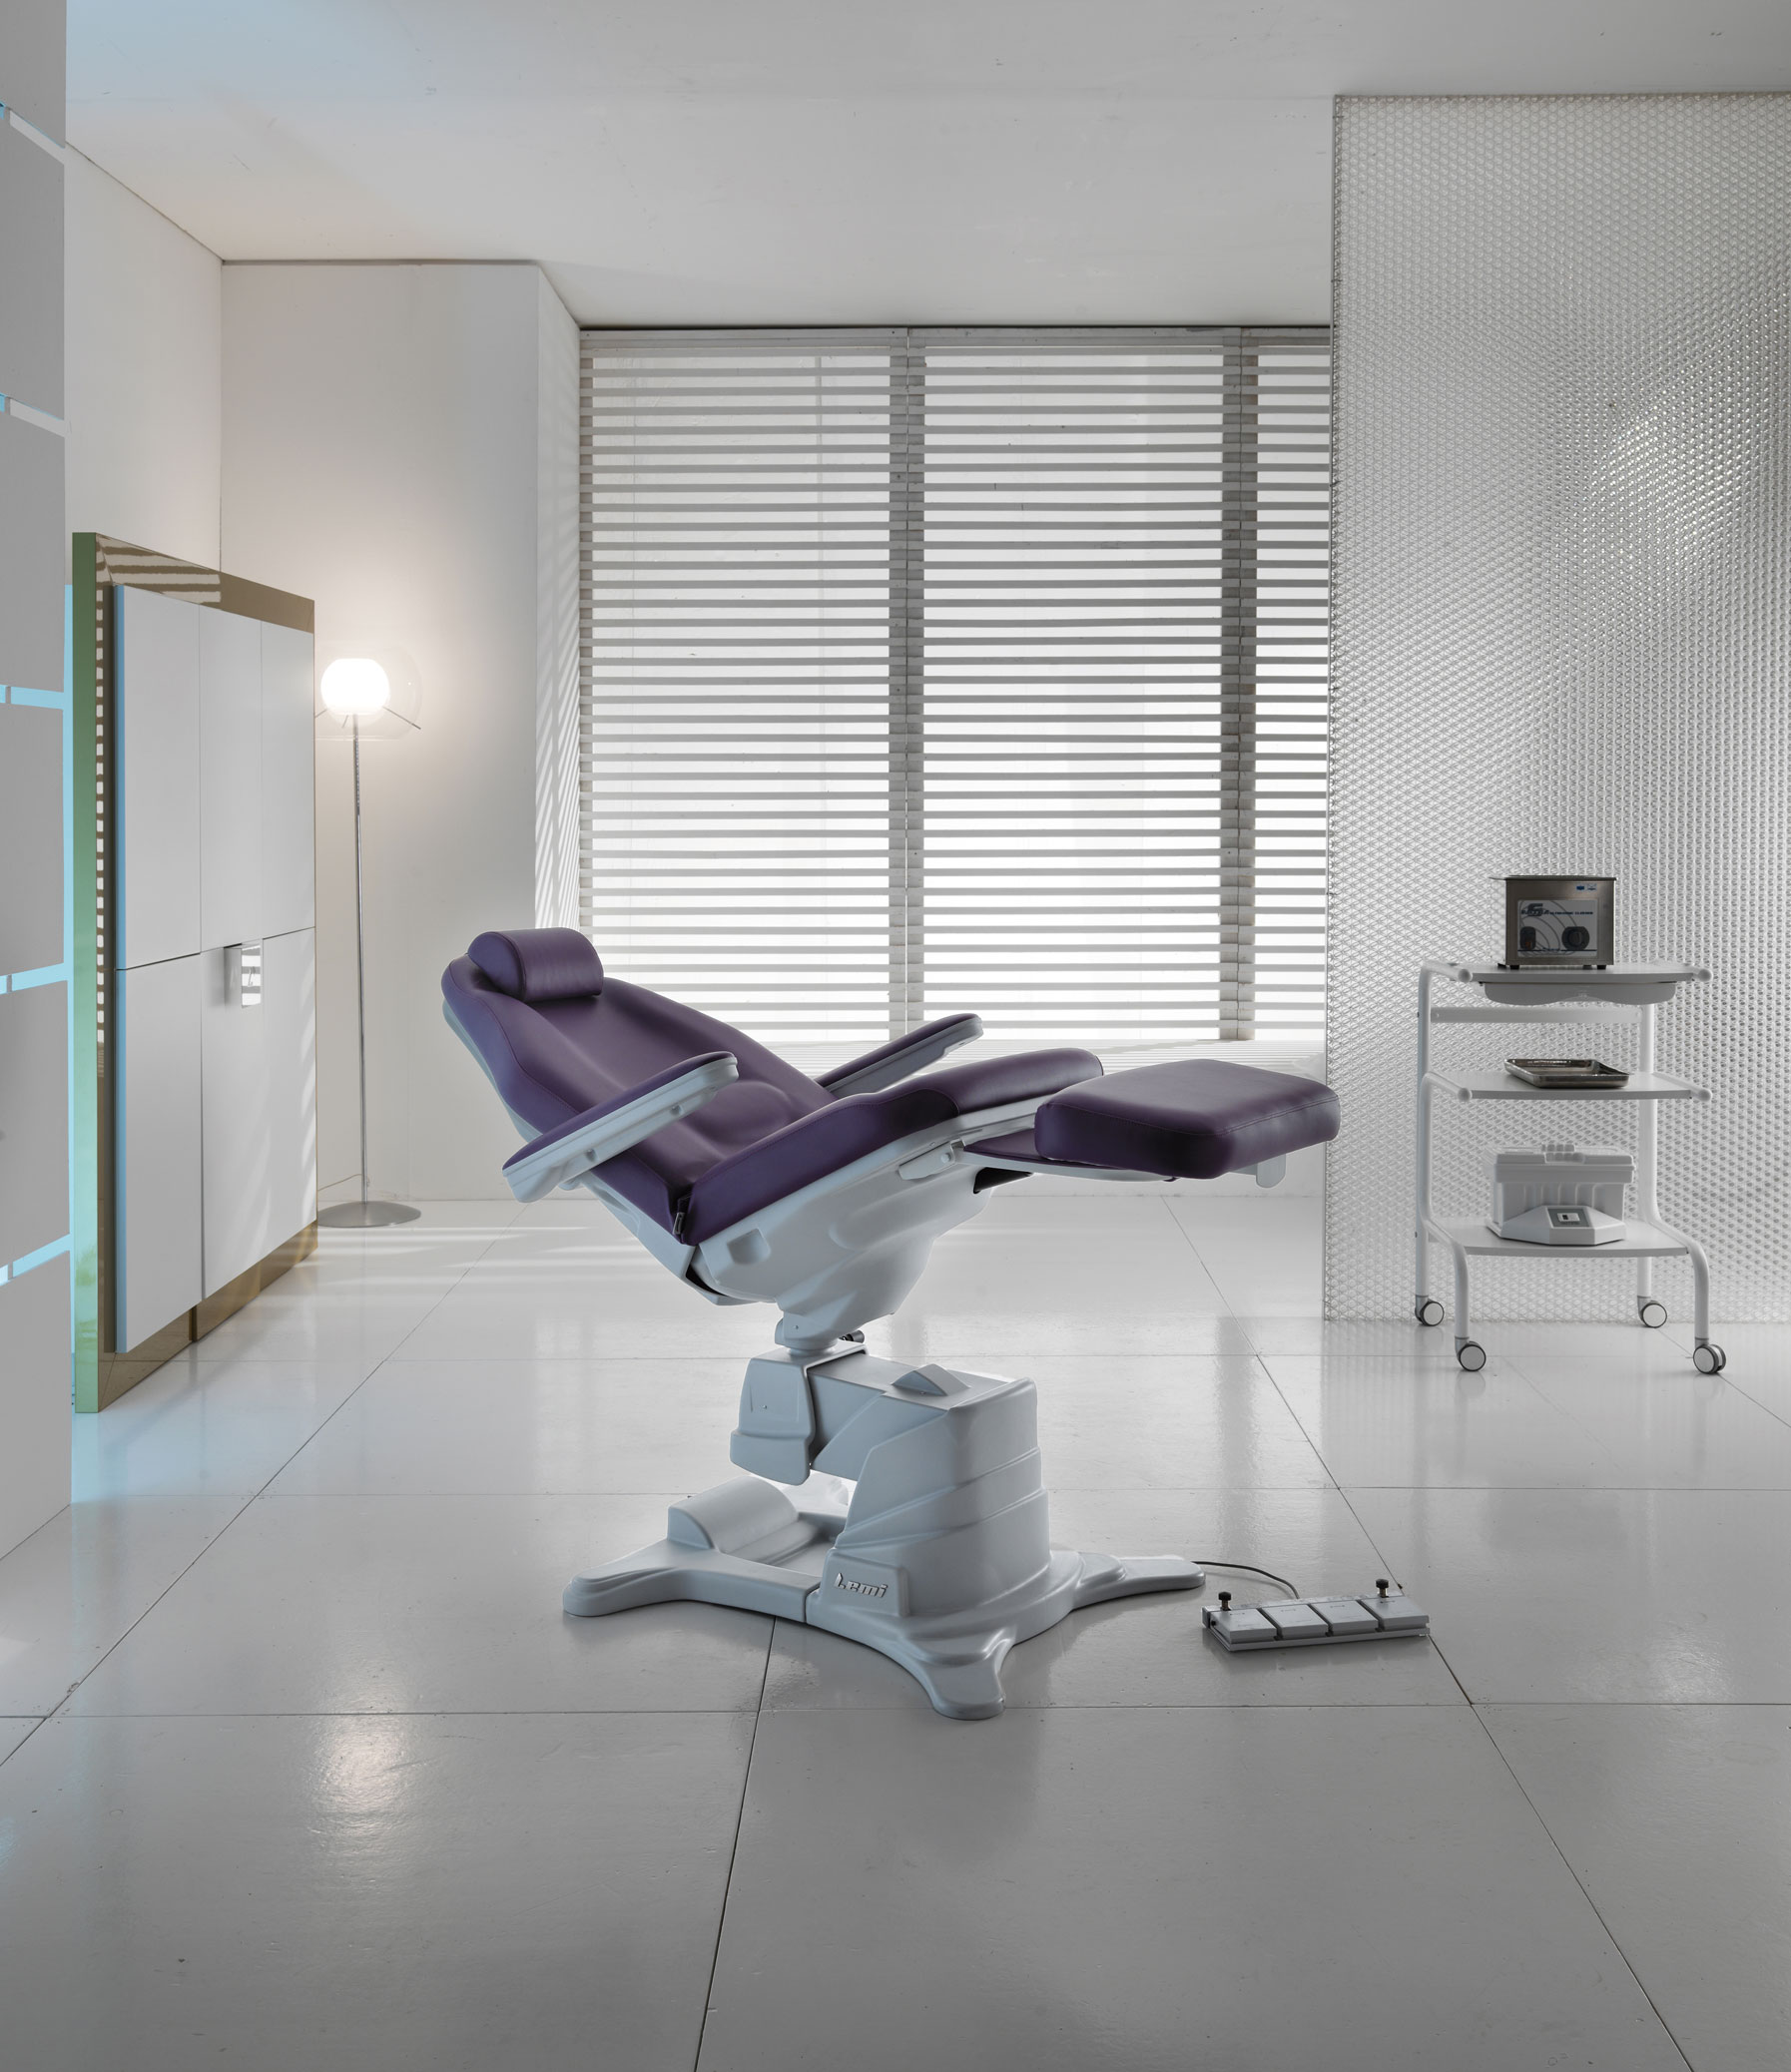 Tandheelkunde-Behandelstoel-Dreamed